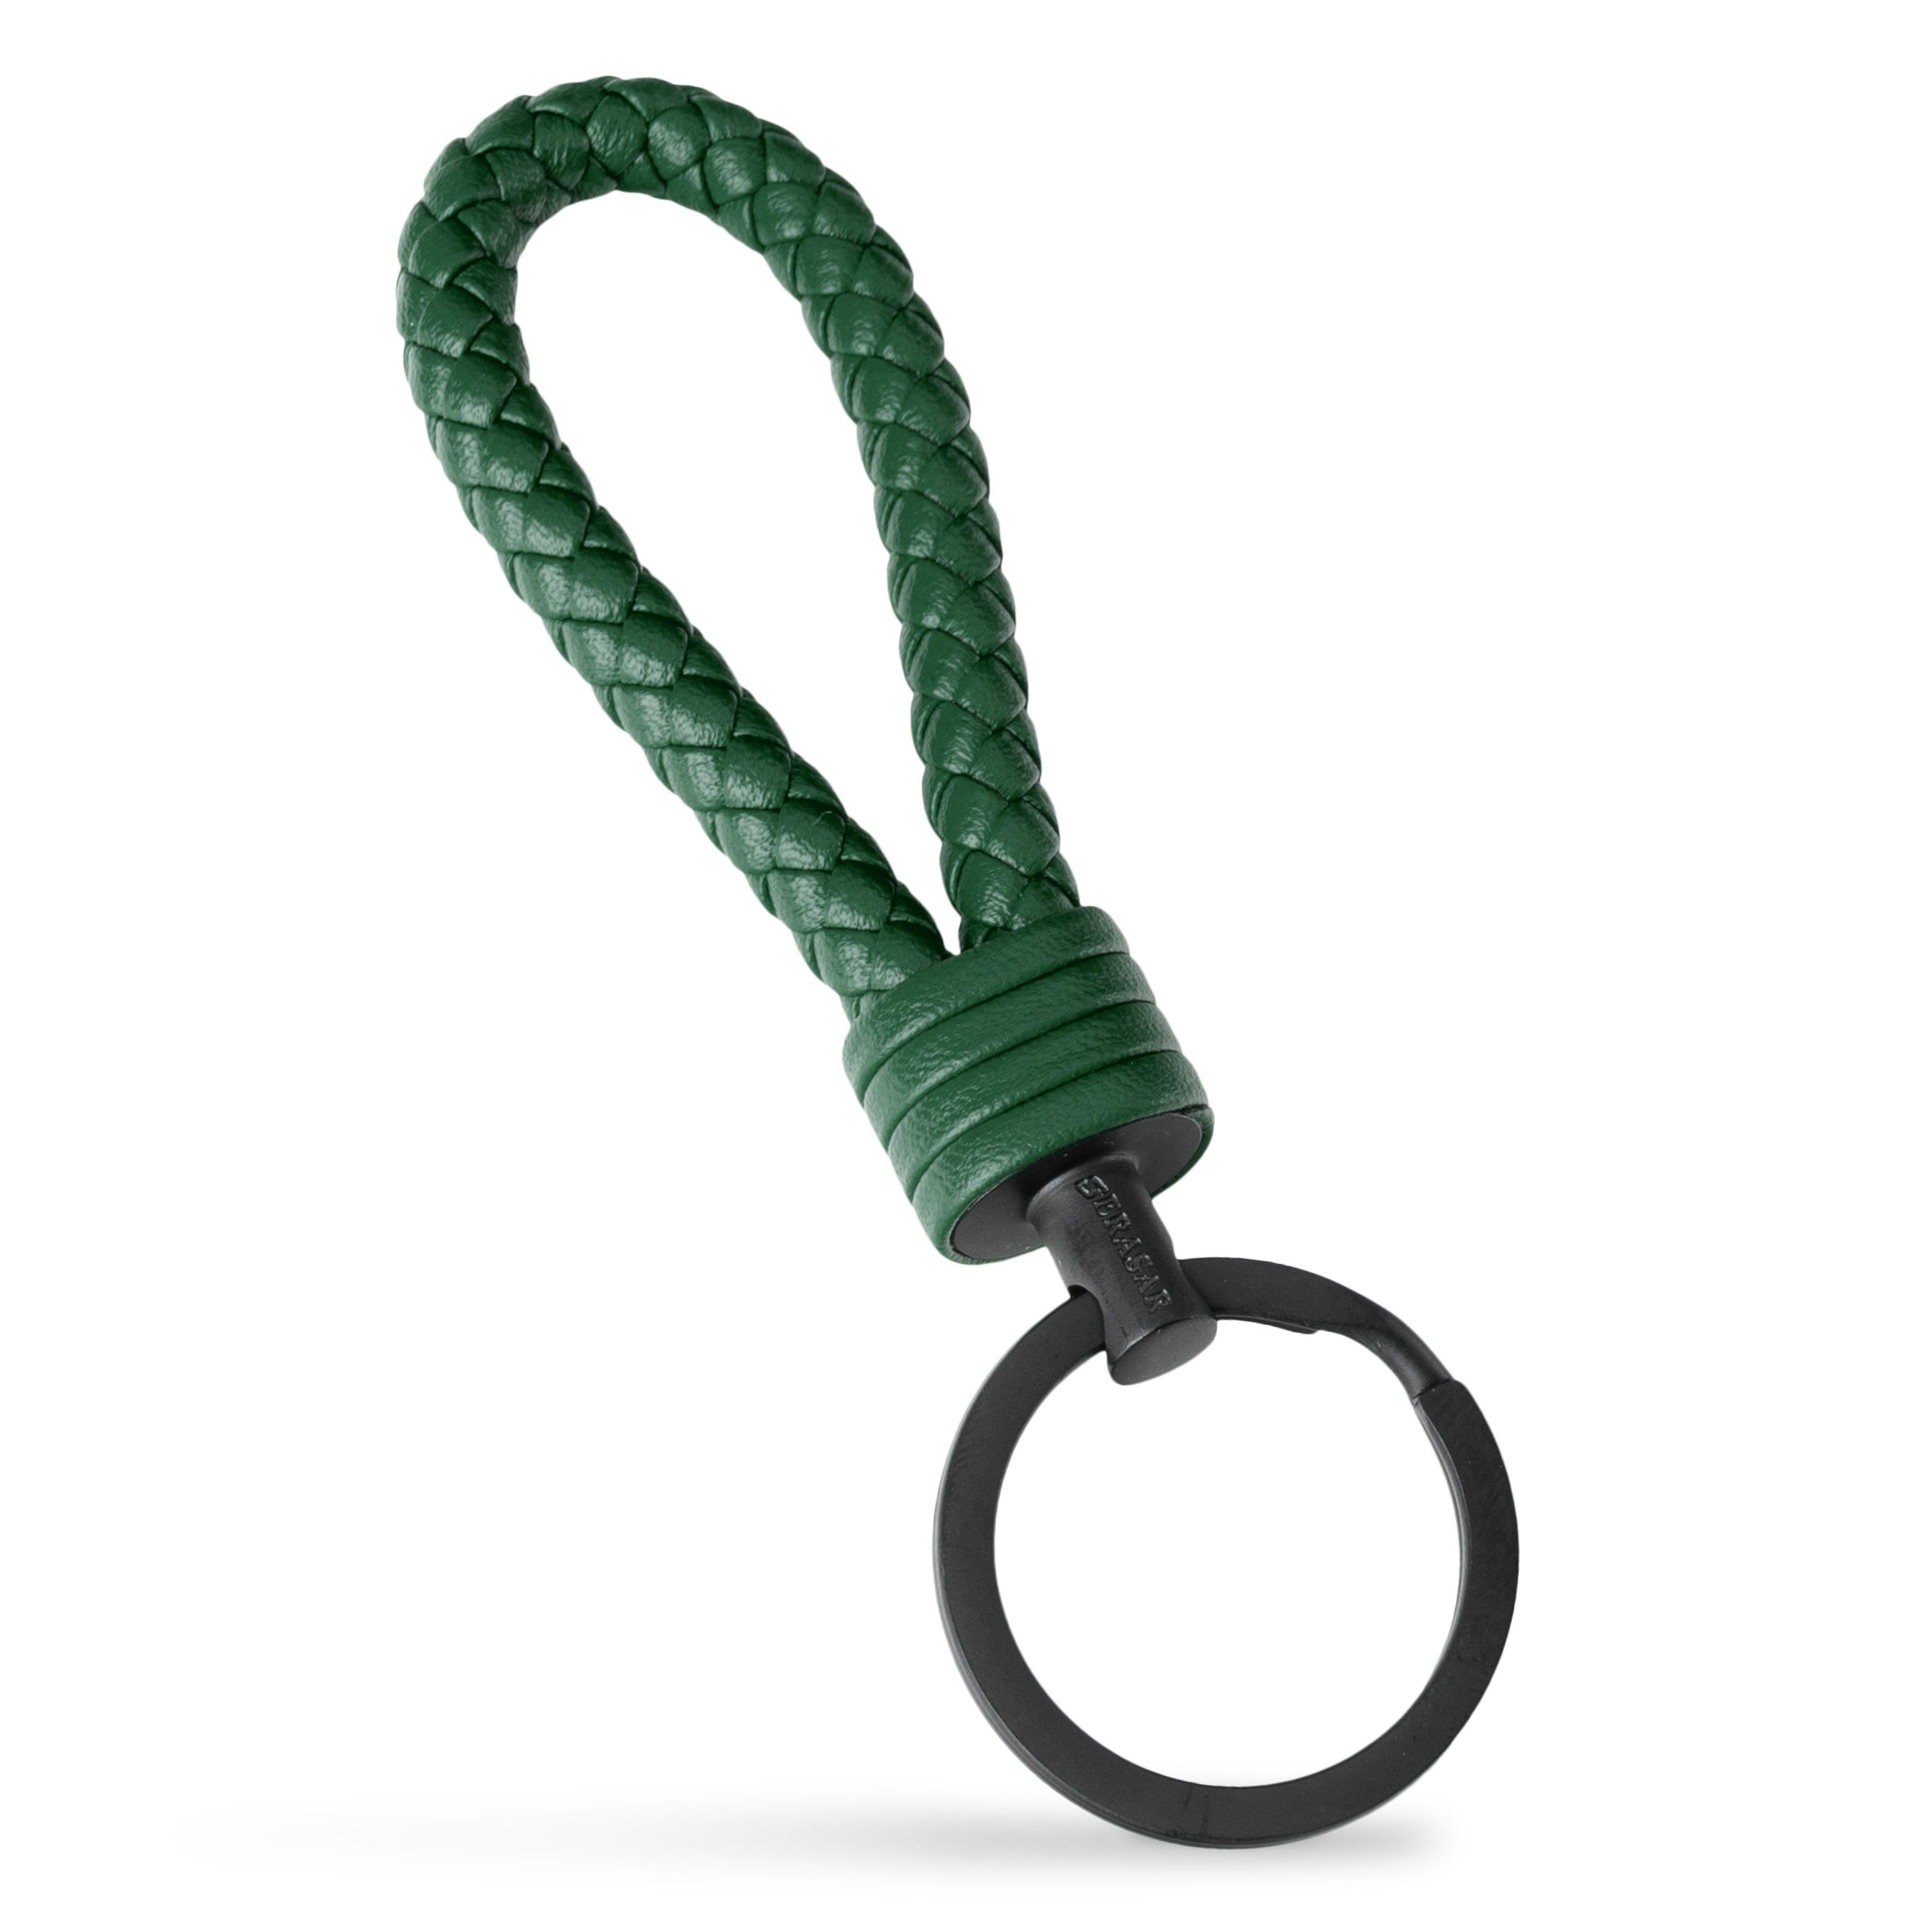 Schlüssel für Schlüsselanhänger Zusatzringe Grün "Strong" (1-tlg), SERASAR Leder kleine Schlüsselanhänger